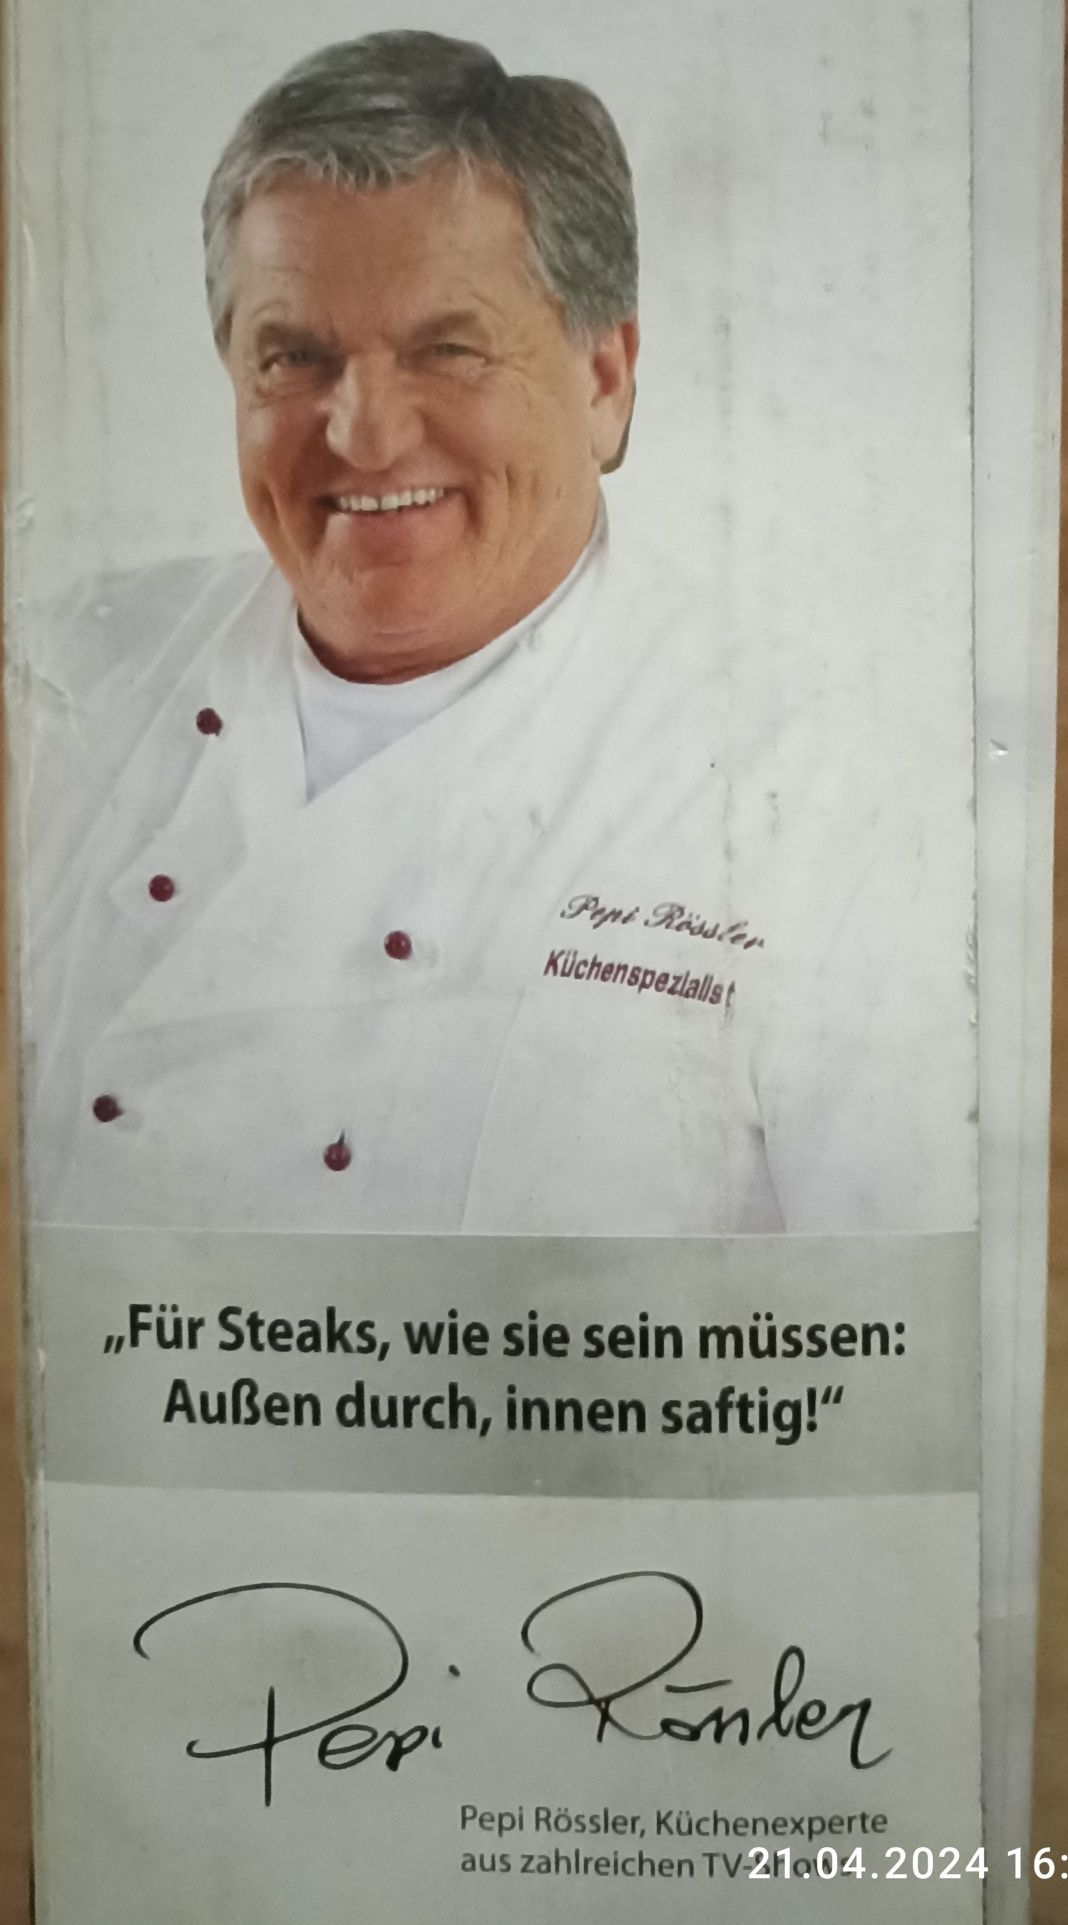 Продам сковороду-гриль Bratmaxx, Германия.
"Bratmaxx Steakpfanne - Ker